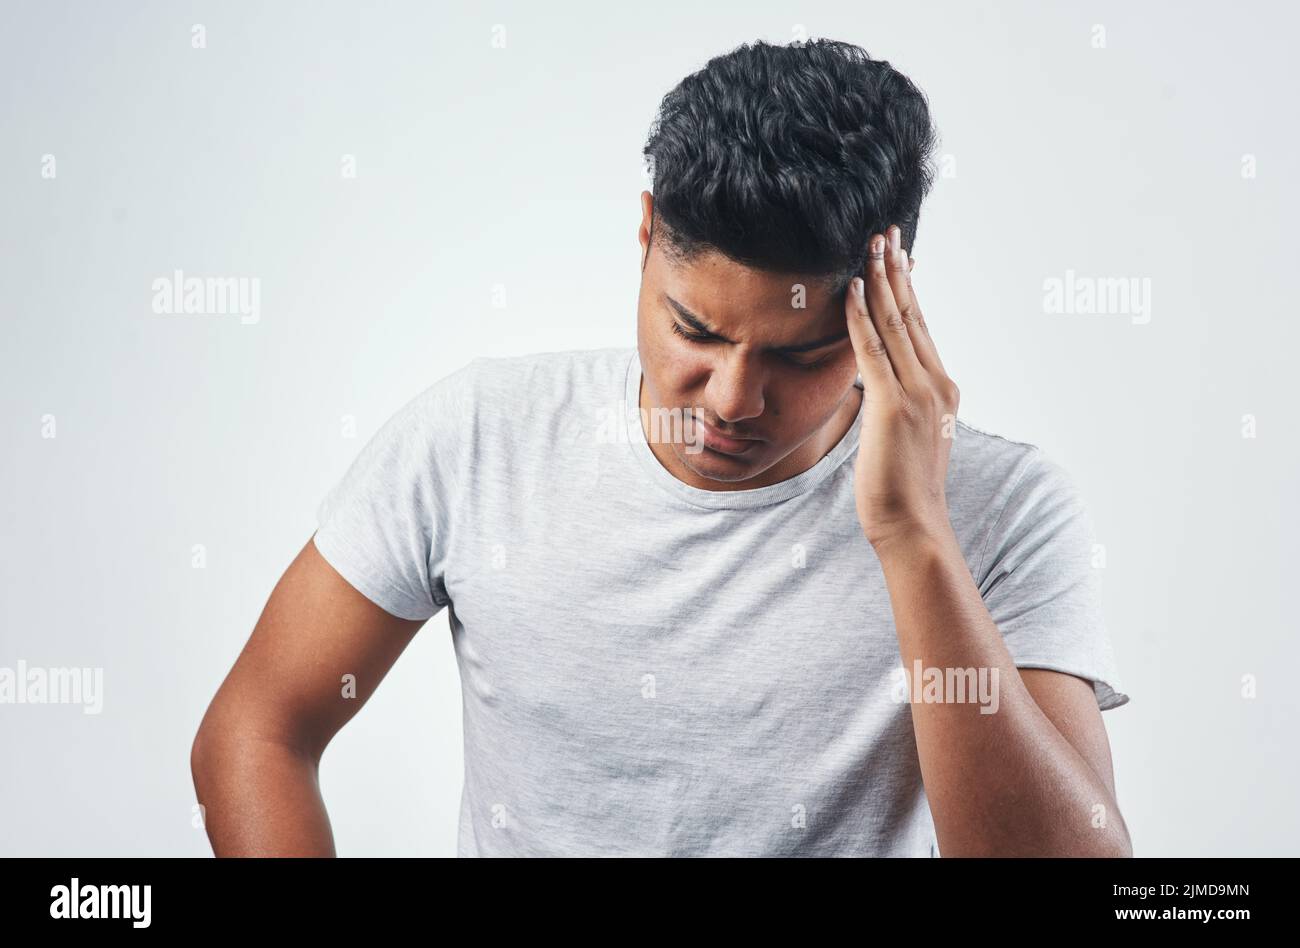 Ich halte es nicht mehr aus. Studioaufnahme eines jungen Mannes, der  Kopfschmerzen hat, während er vor weißem Hintergrund steht Stockfotografie  - Alamy